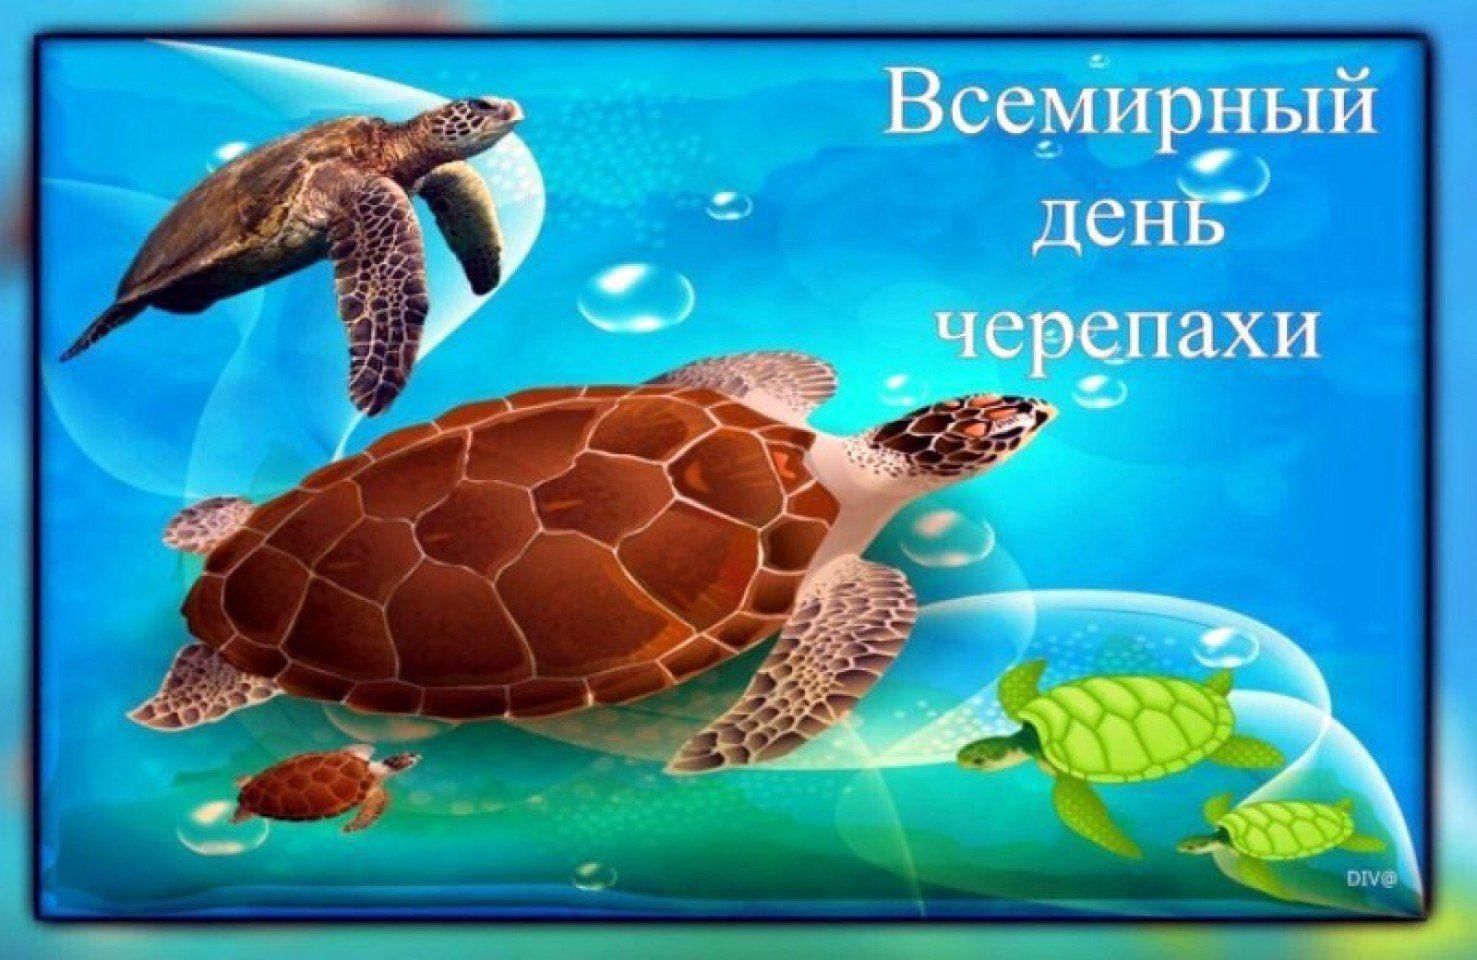 Открытки на праздник Всемирный день черепах (10)